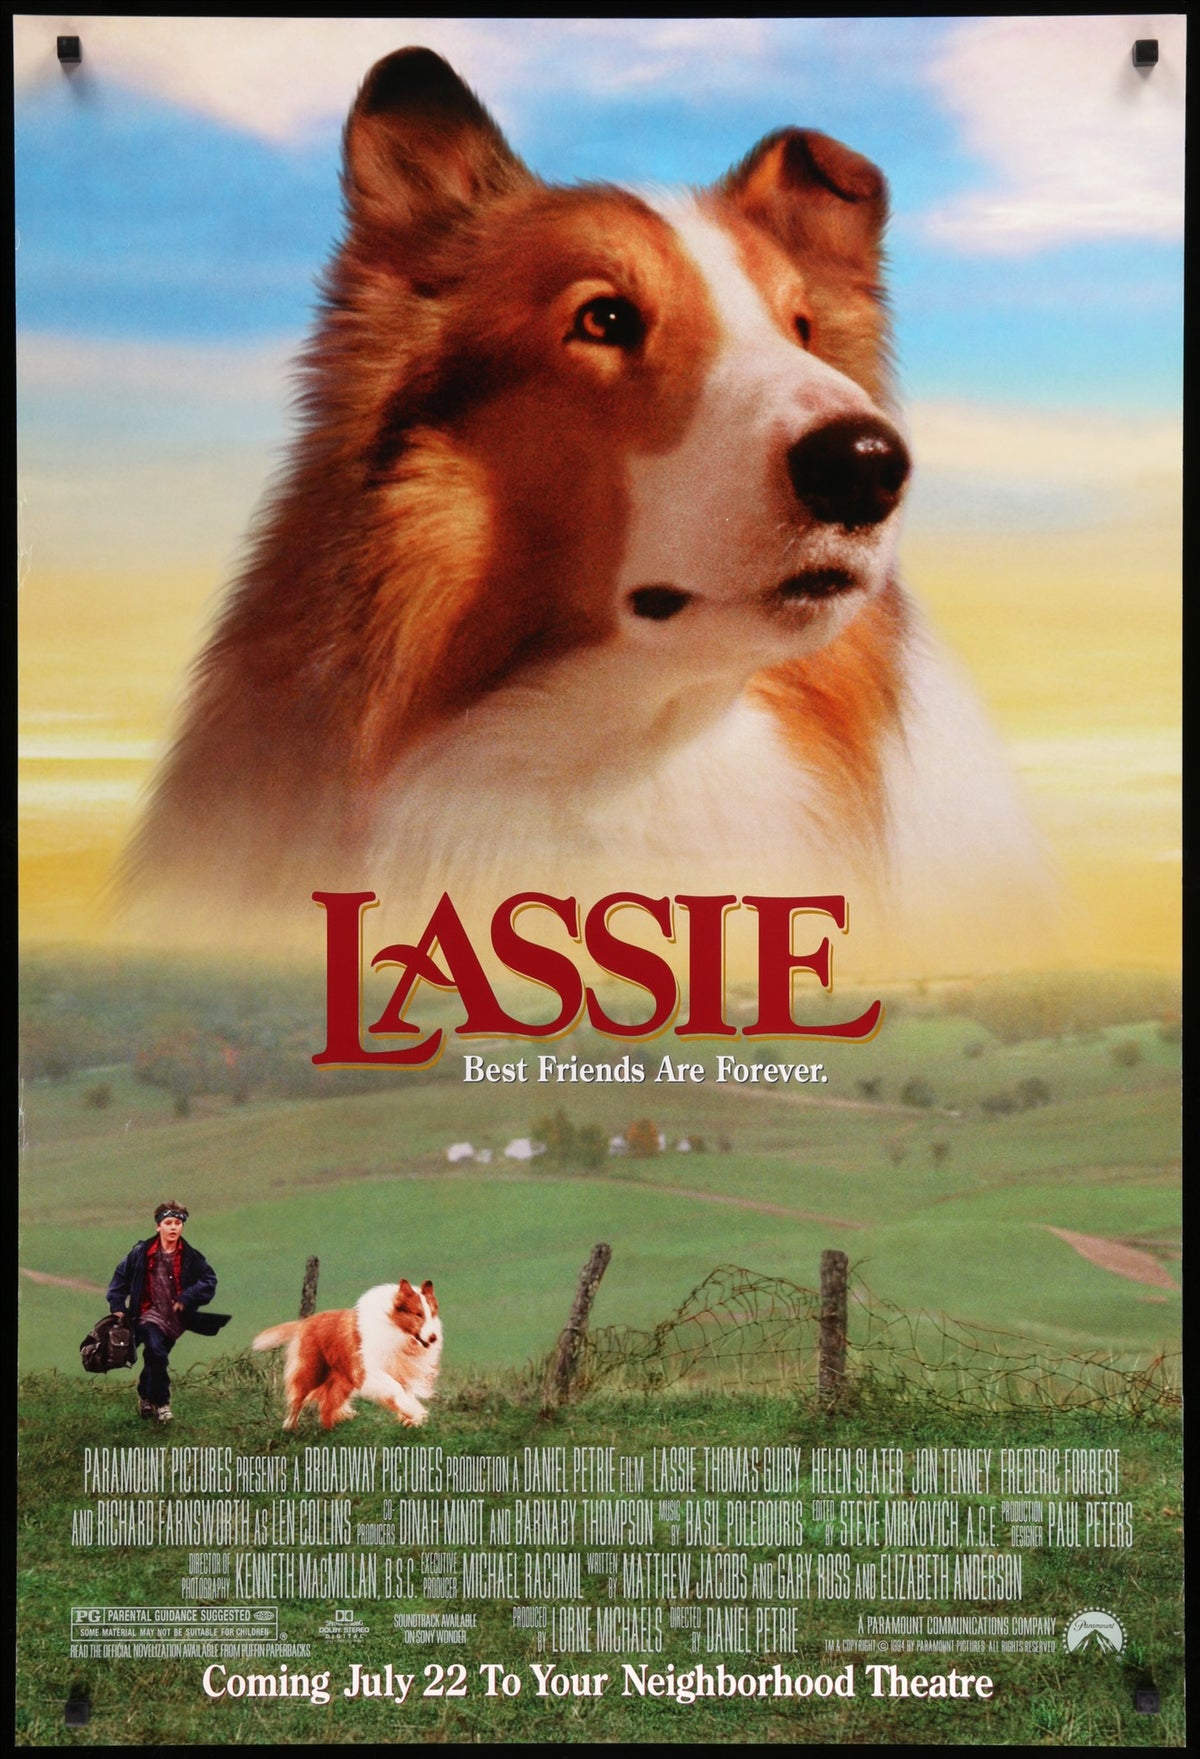 Lassie (1994) original movie poster for sale at Original Film Art